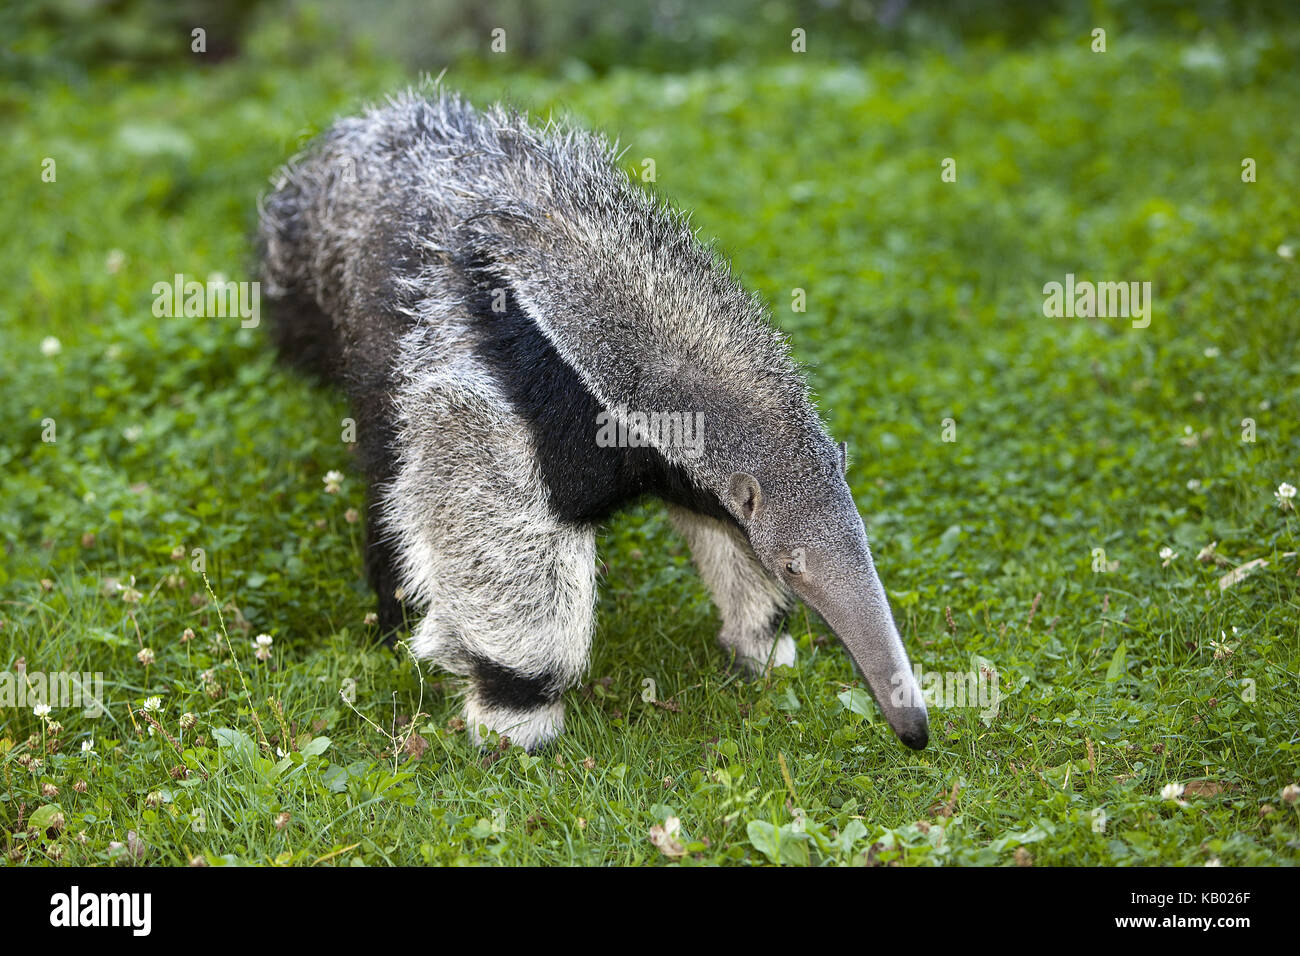 Big anteater, myrmecophaga tridactyla, giovane animale, femmina, Foto Stock